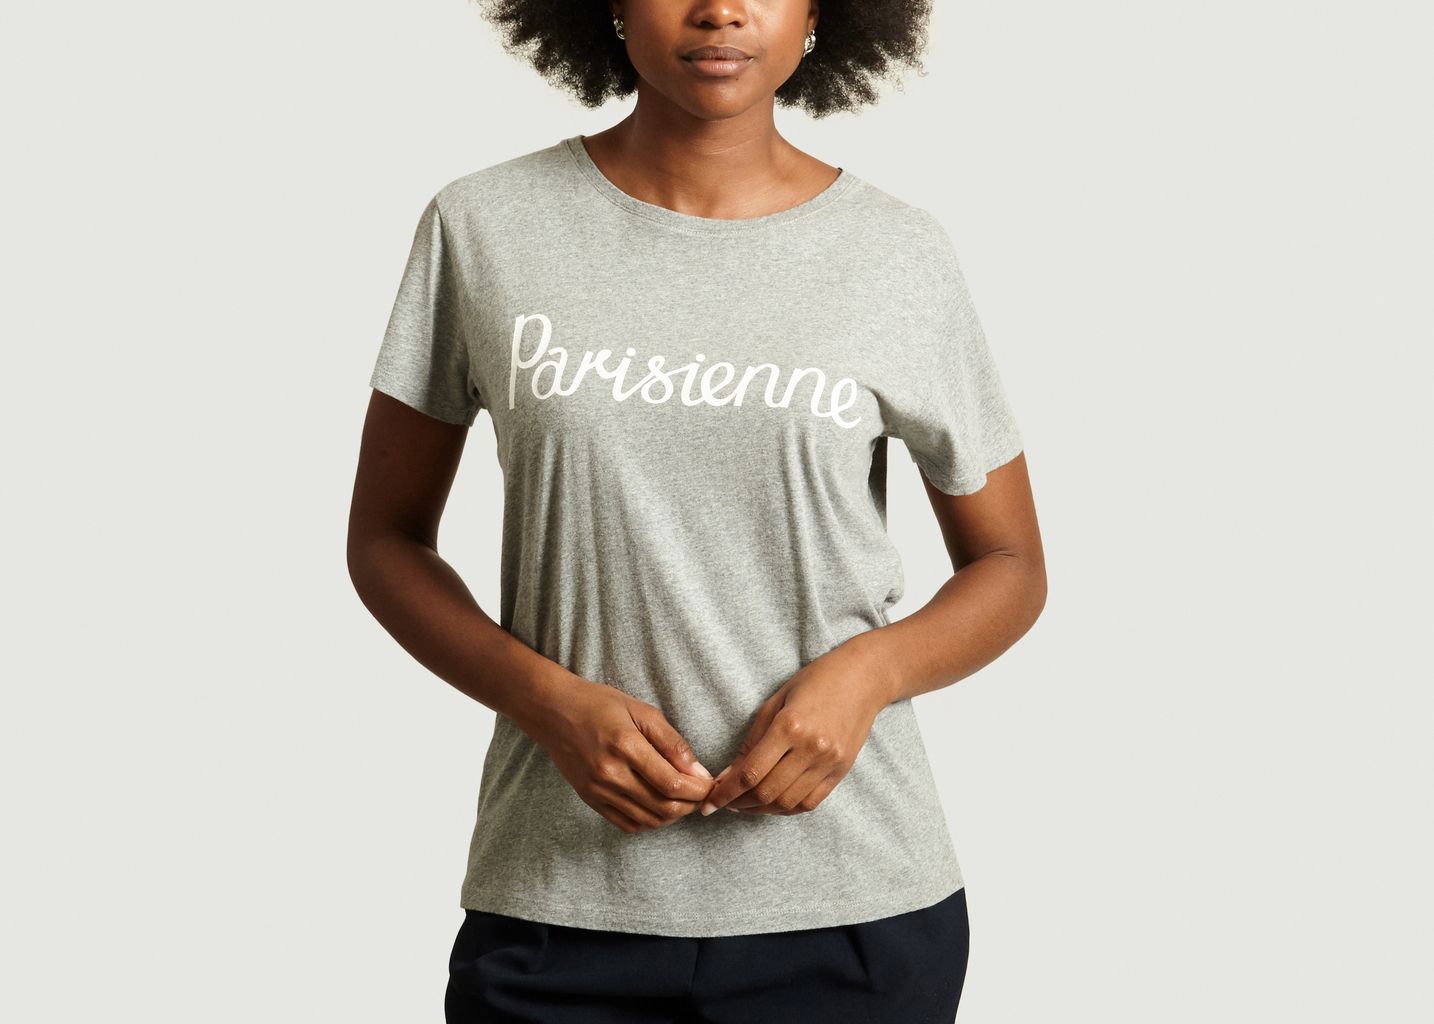 T-Shirt Lettrage Parisienne - Maison Kitsuné